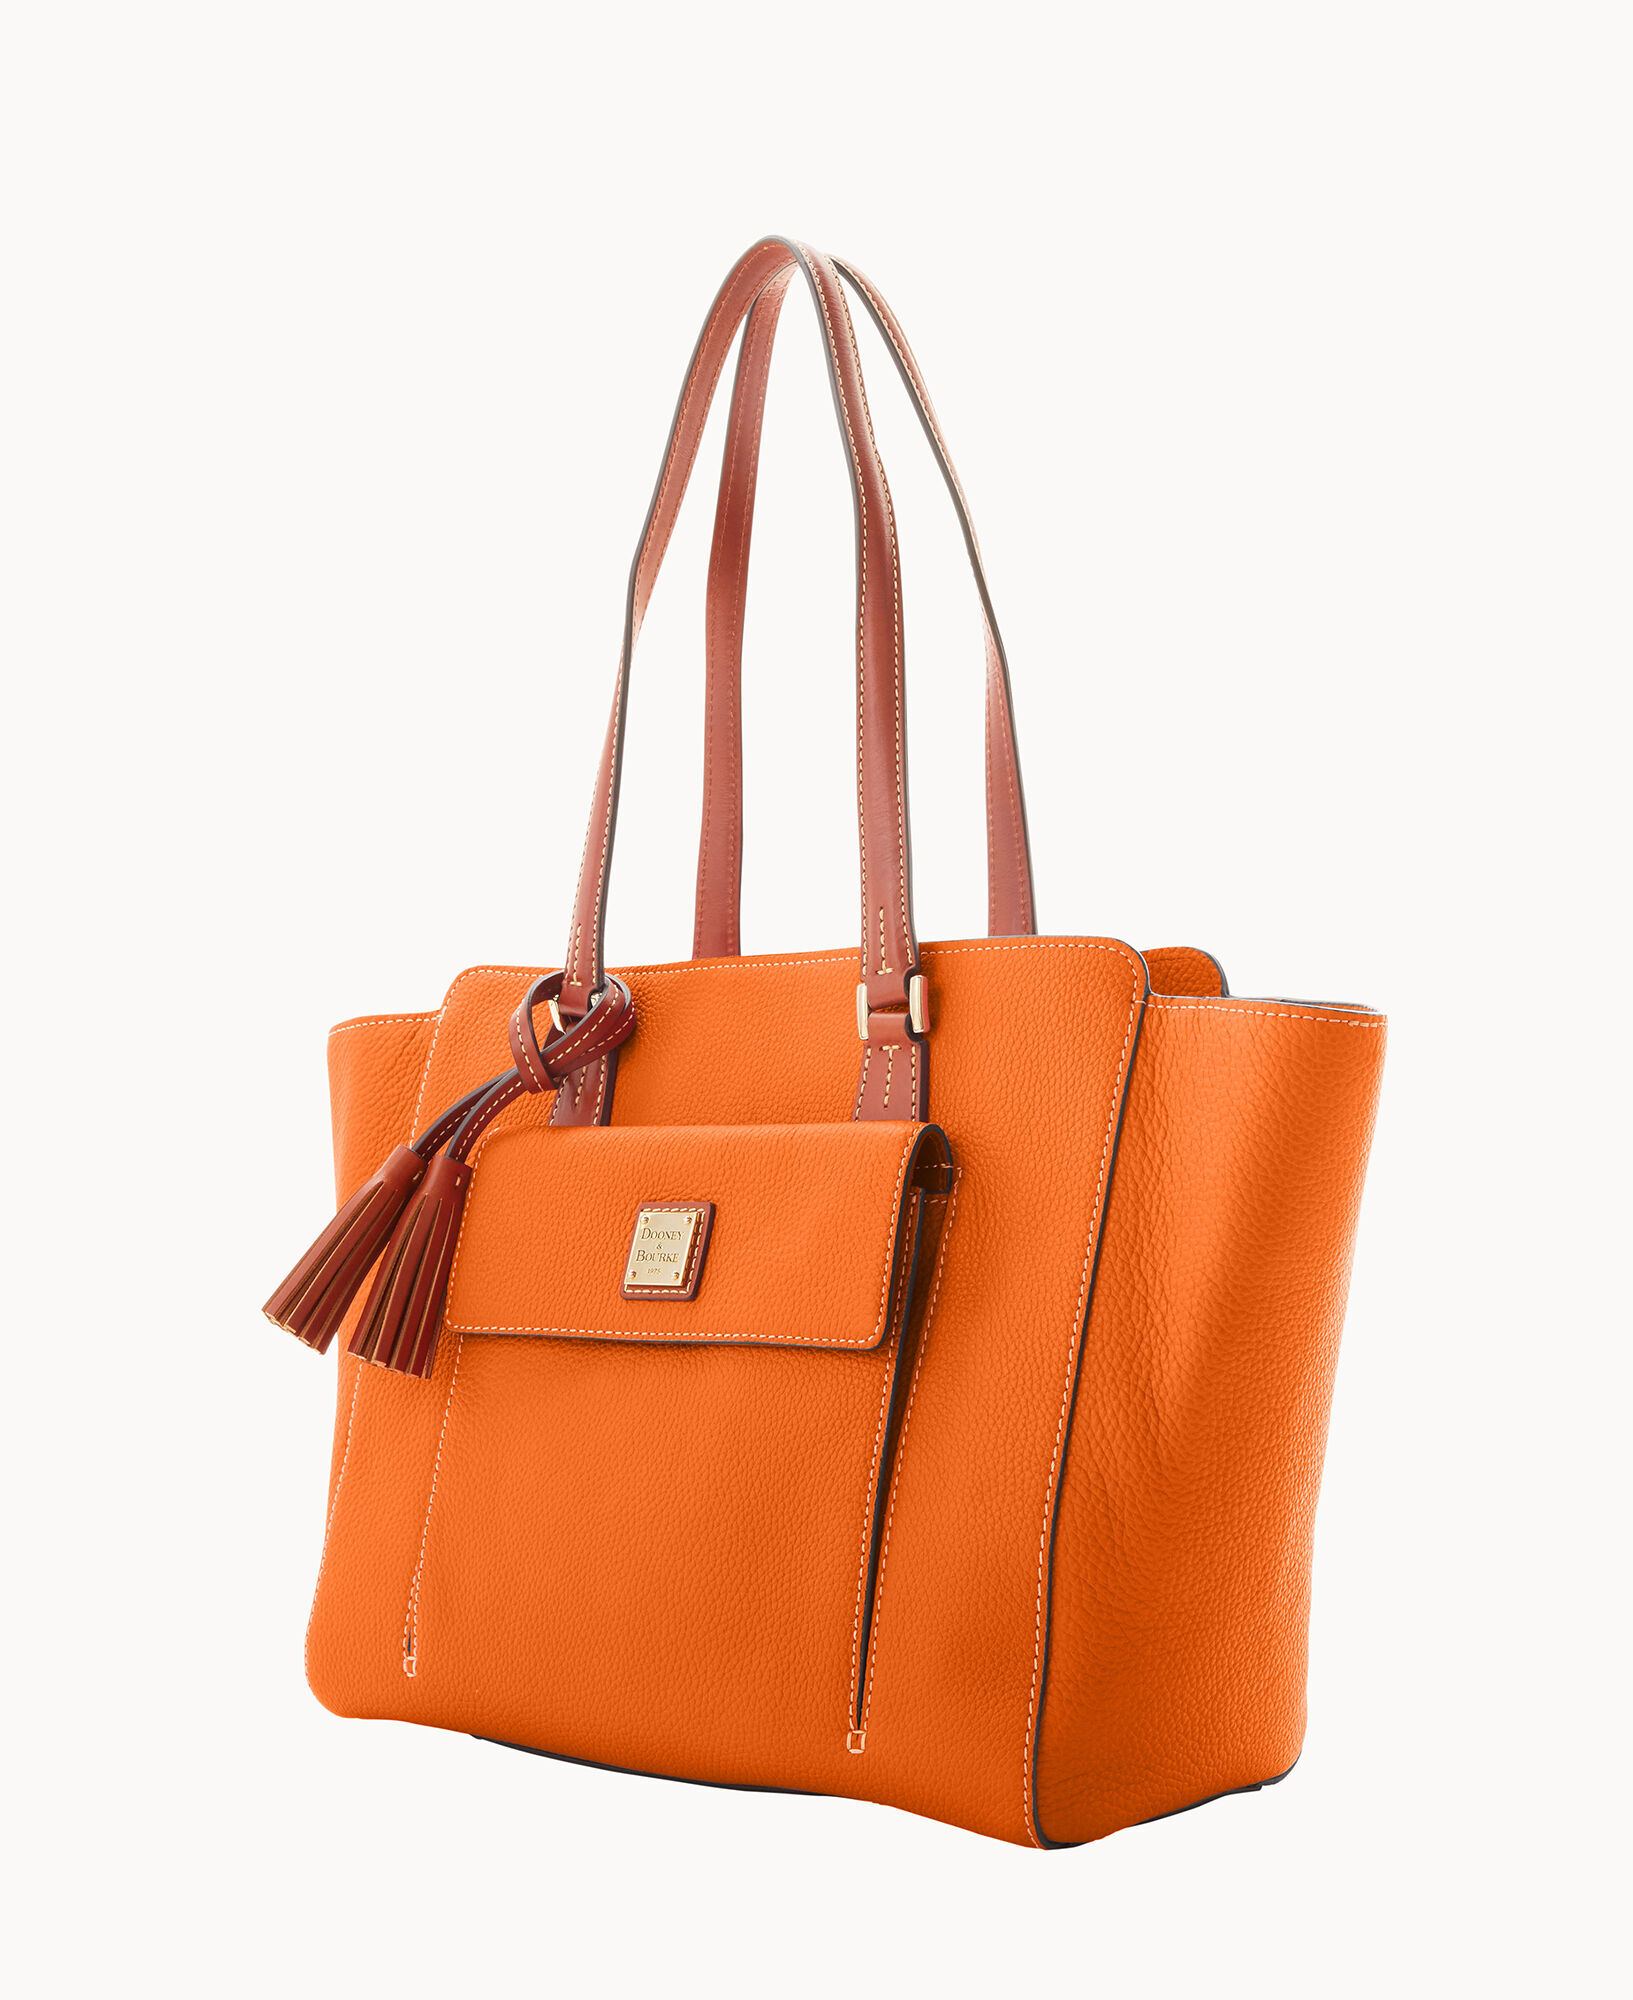 Dooney & Bourke Women's Tote Bags - Orange